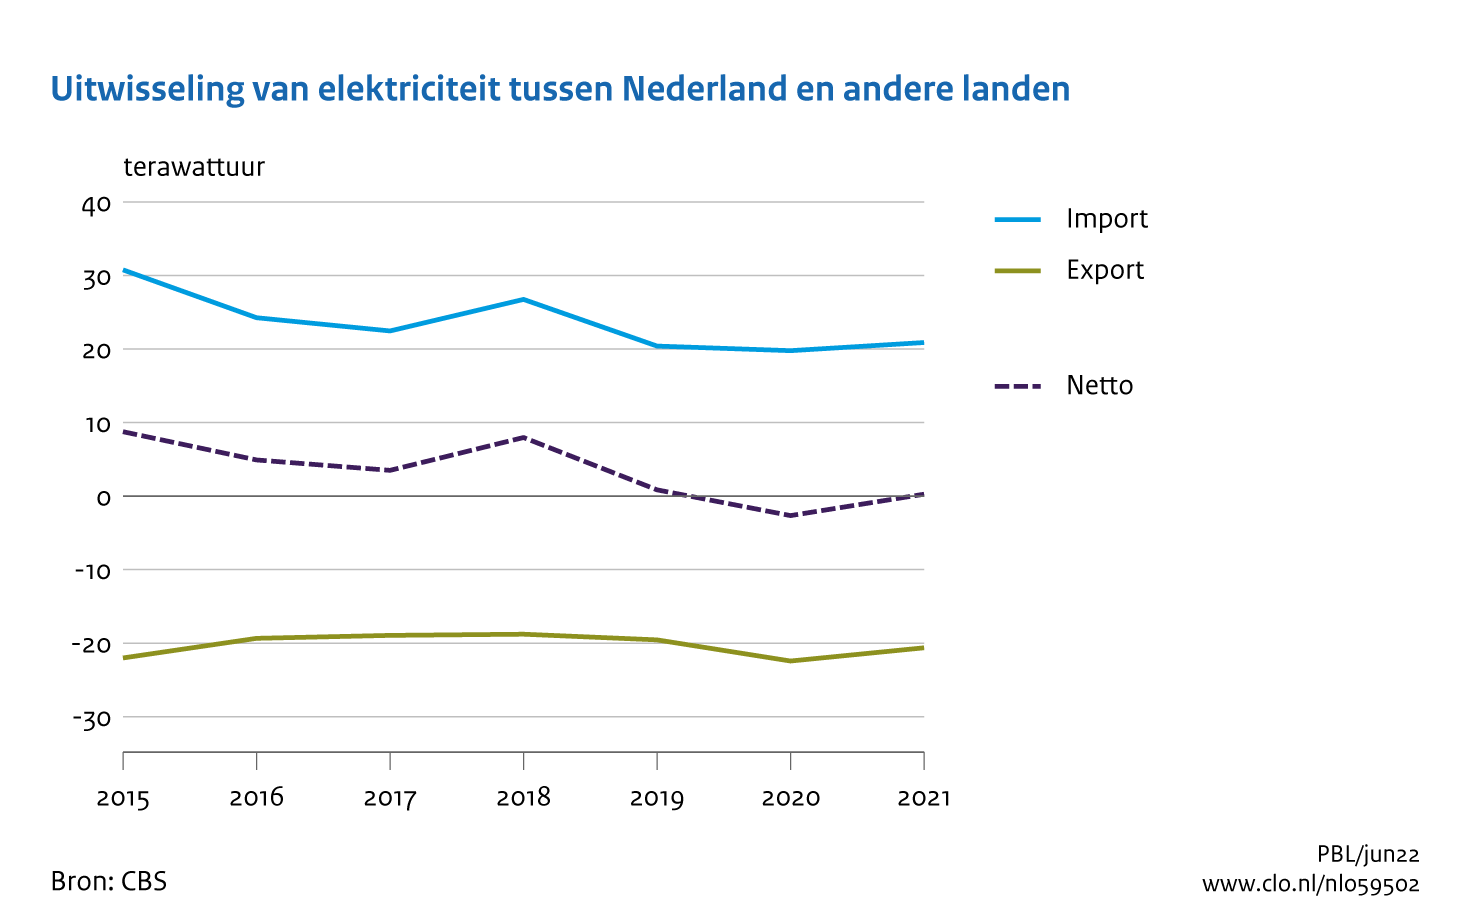 Figuur Totale uitwisseling van elektriciteit tussen Nederland en andere landen. In de rest van de tekst wordt deze figuur uitgebreider uitgelegd.